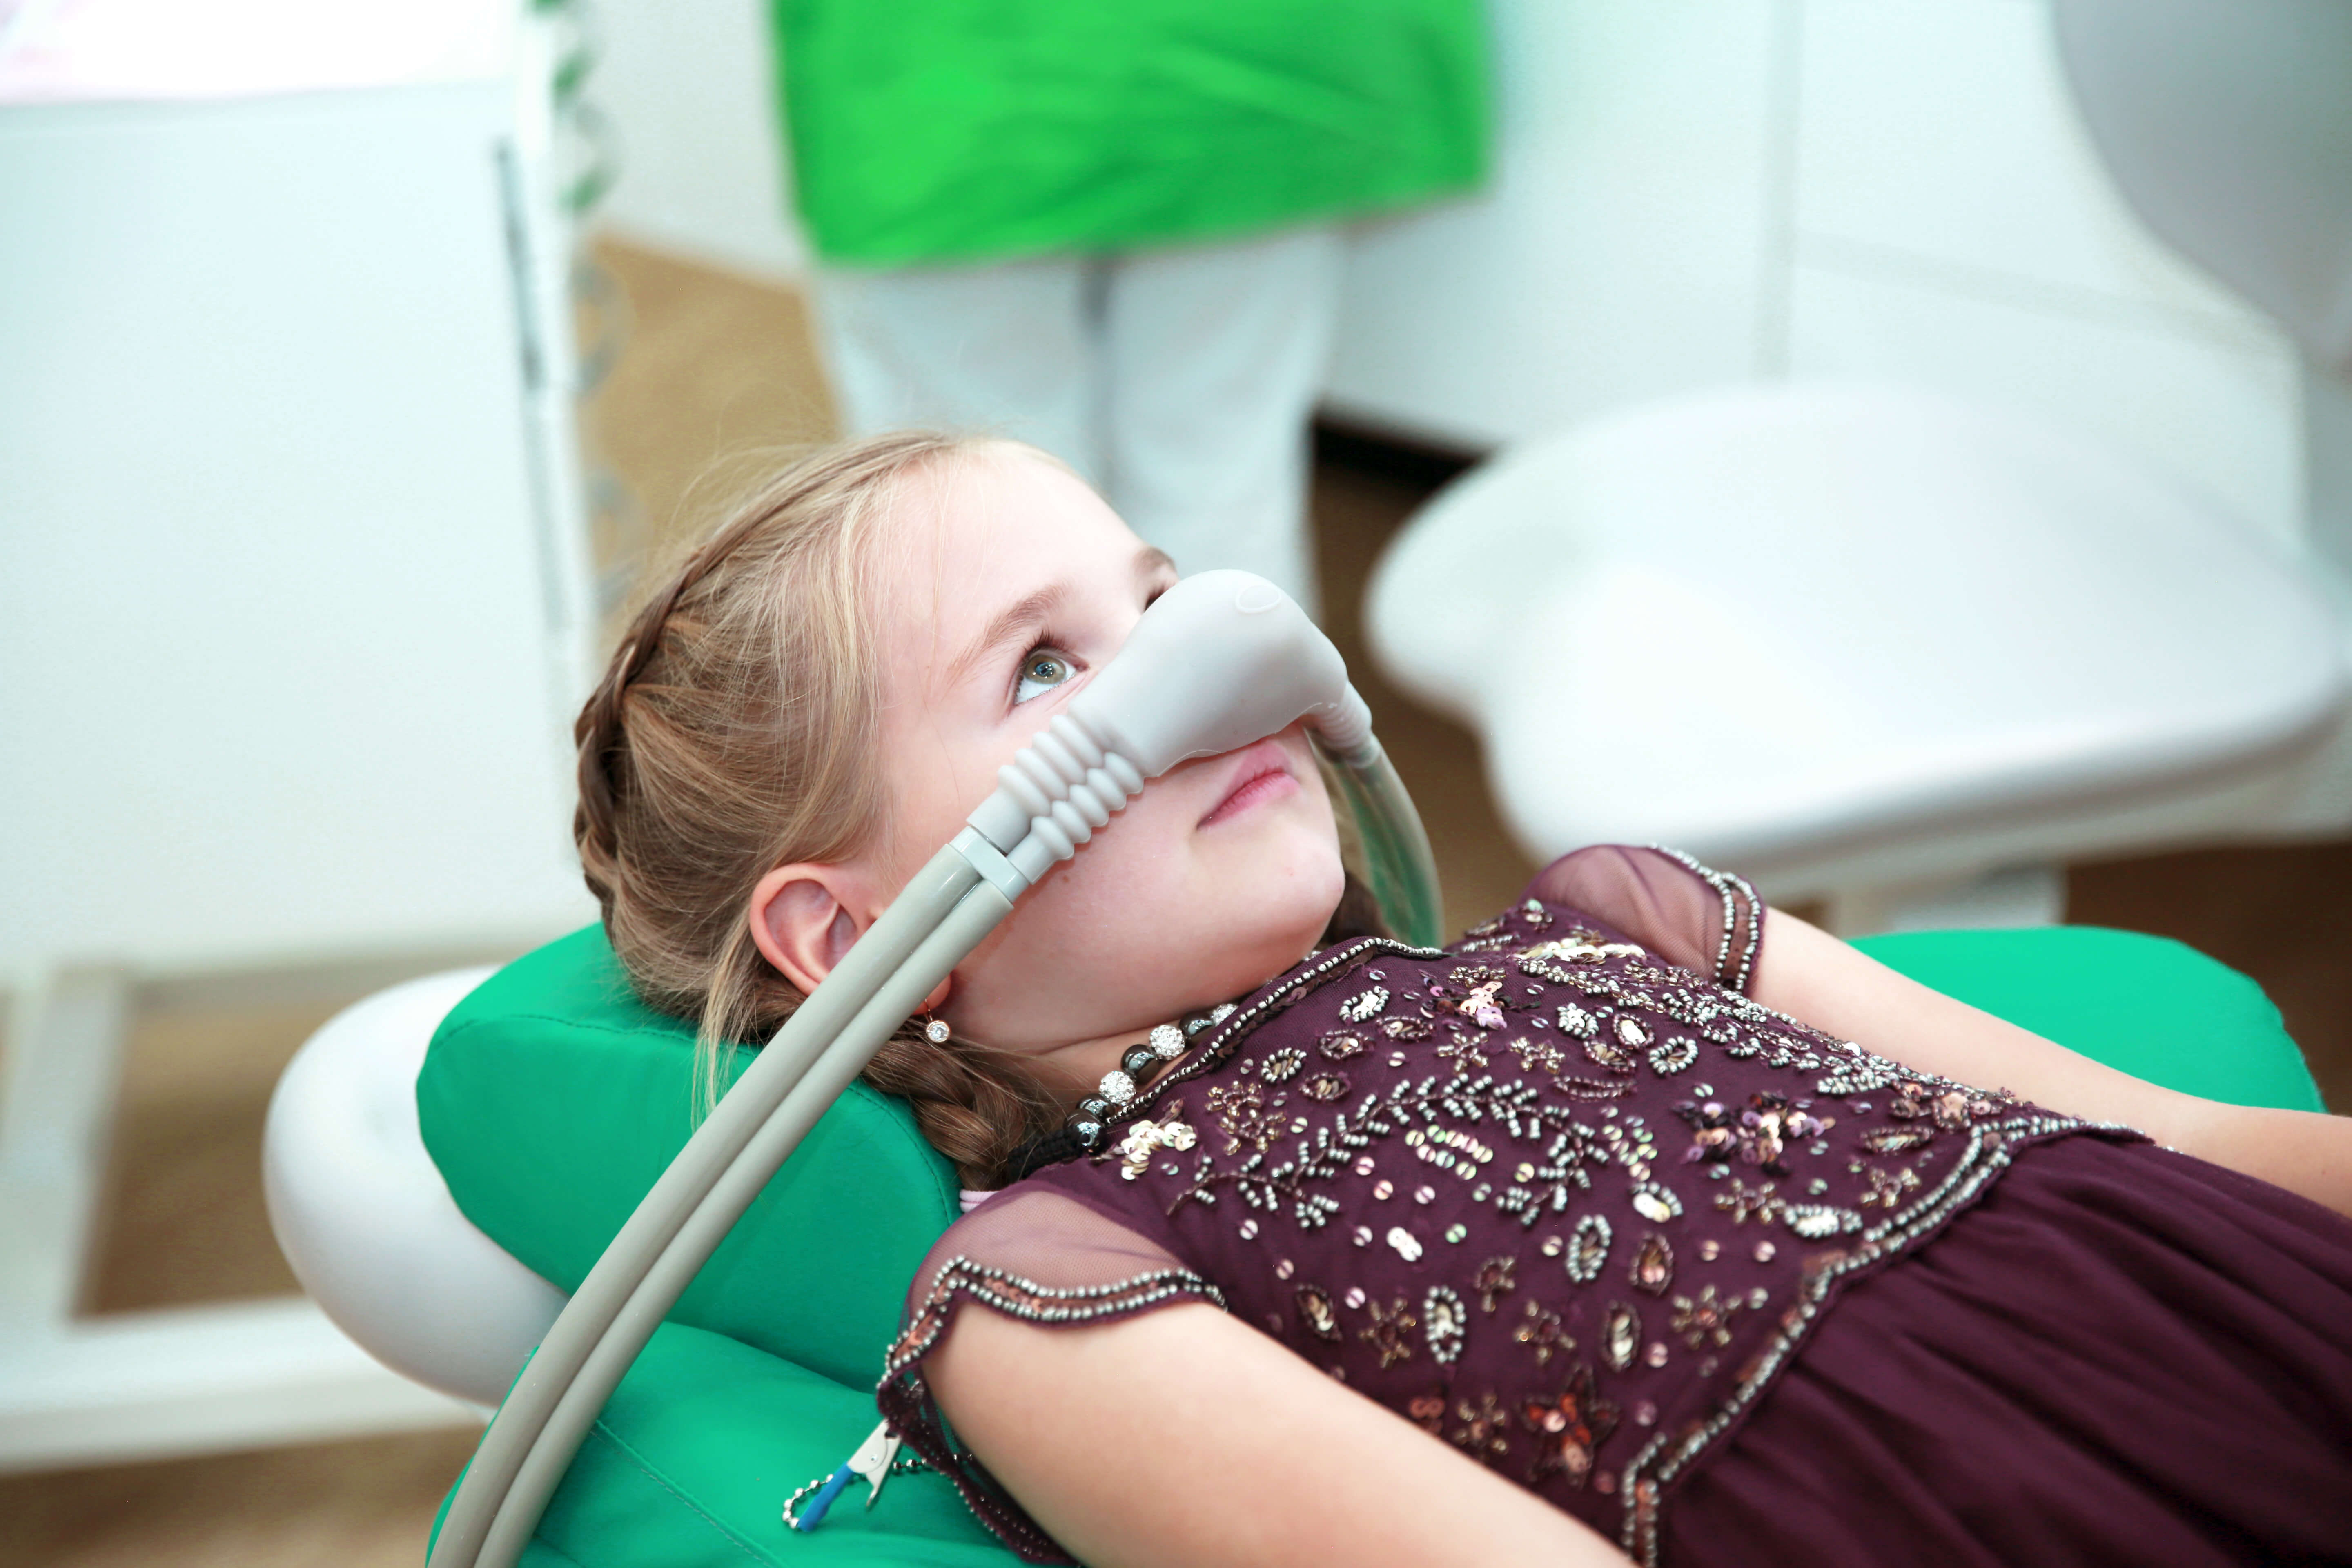 Детская стоматология без страха и боли что такое метод седации и может ли он быть опасен